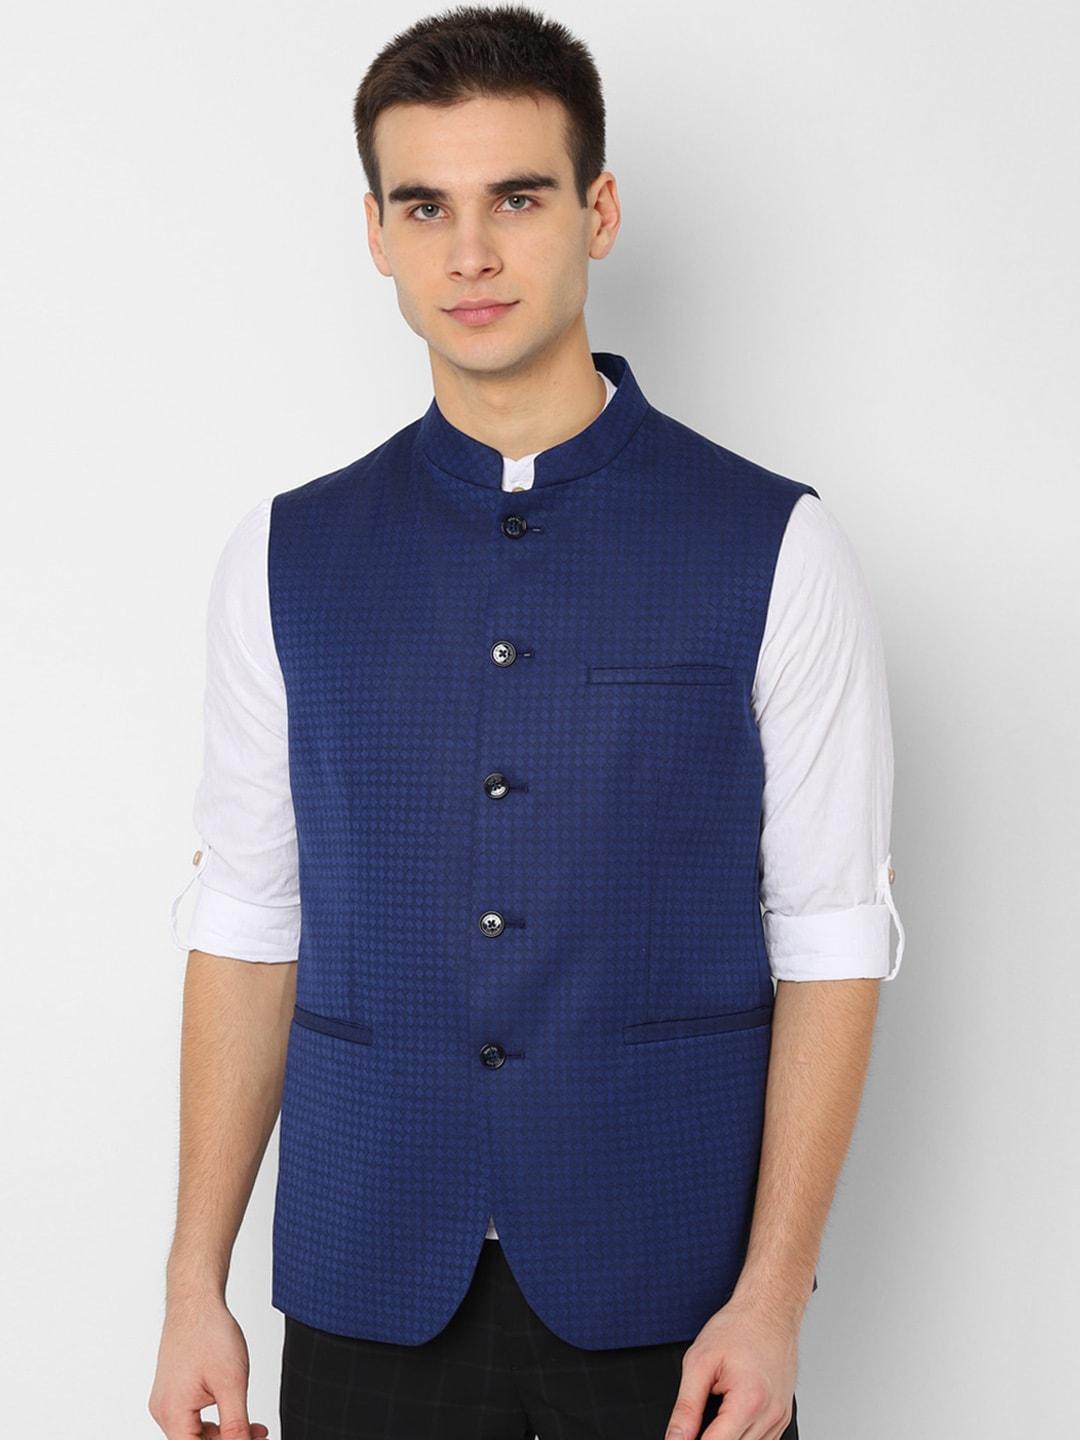 allen-solly-men-navy-blue-slim-fit-woven-design-nehru-jacket